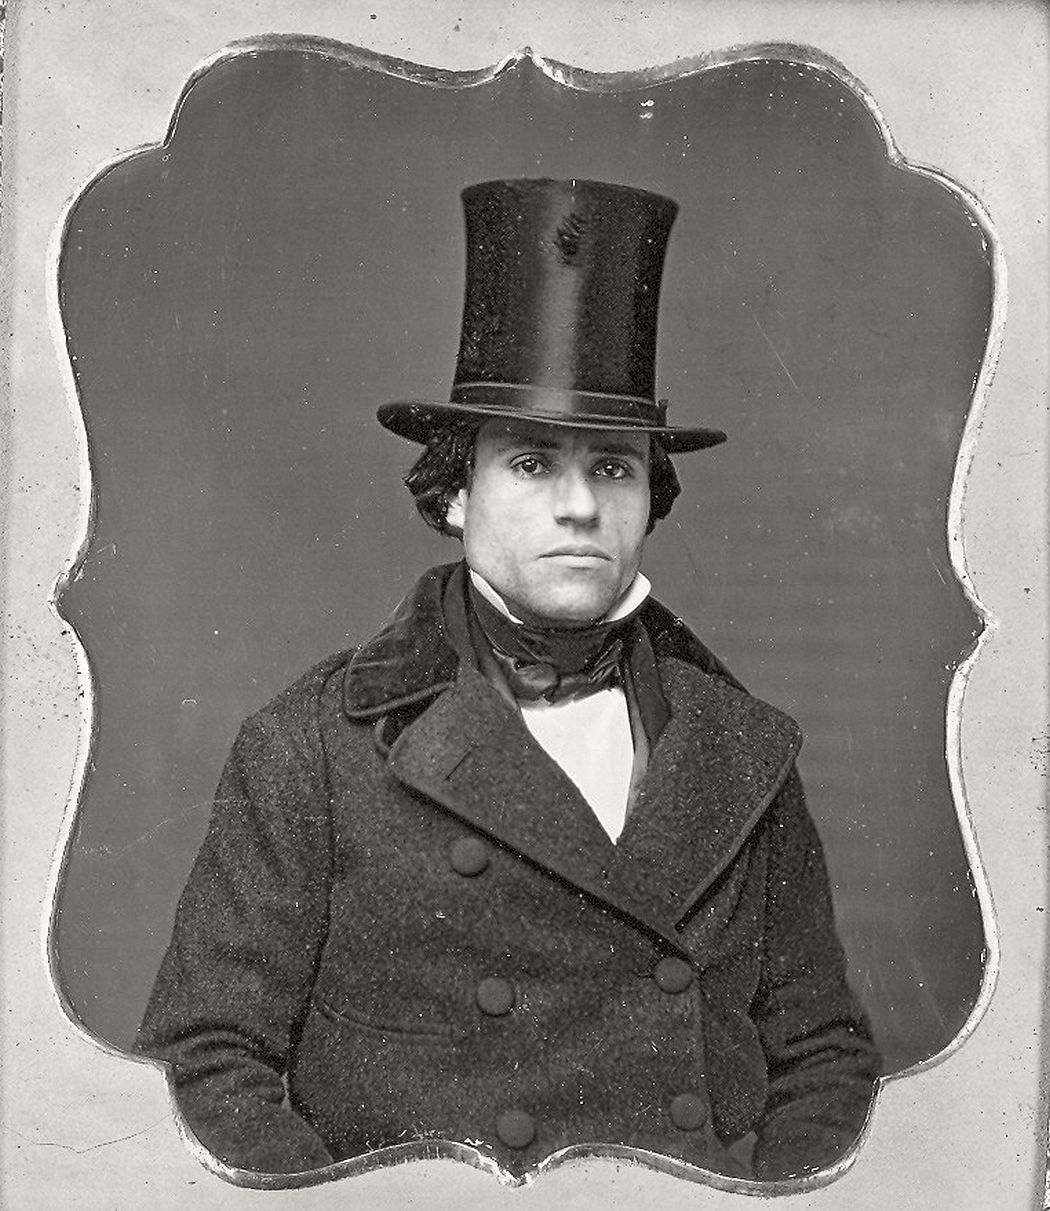 victorian-era-daguerreotype-of-men-in-hat-1850s-xix-century-03